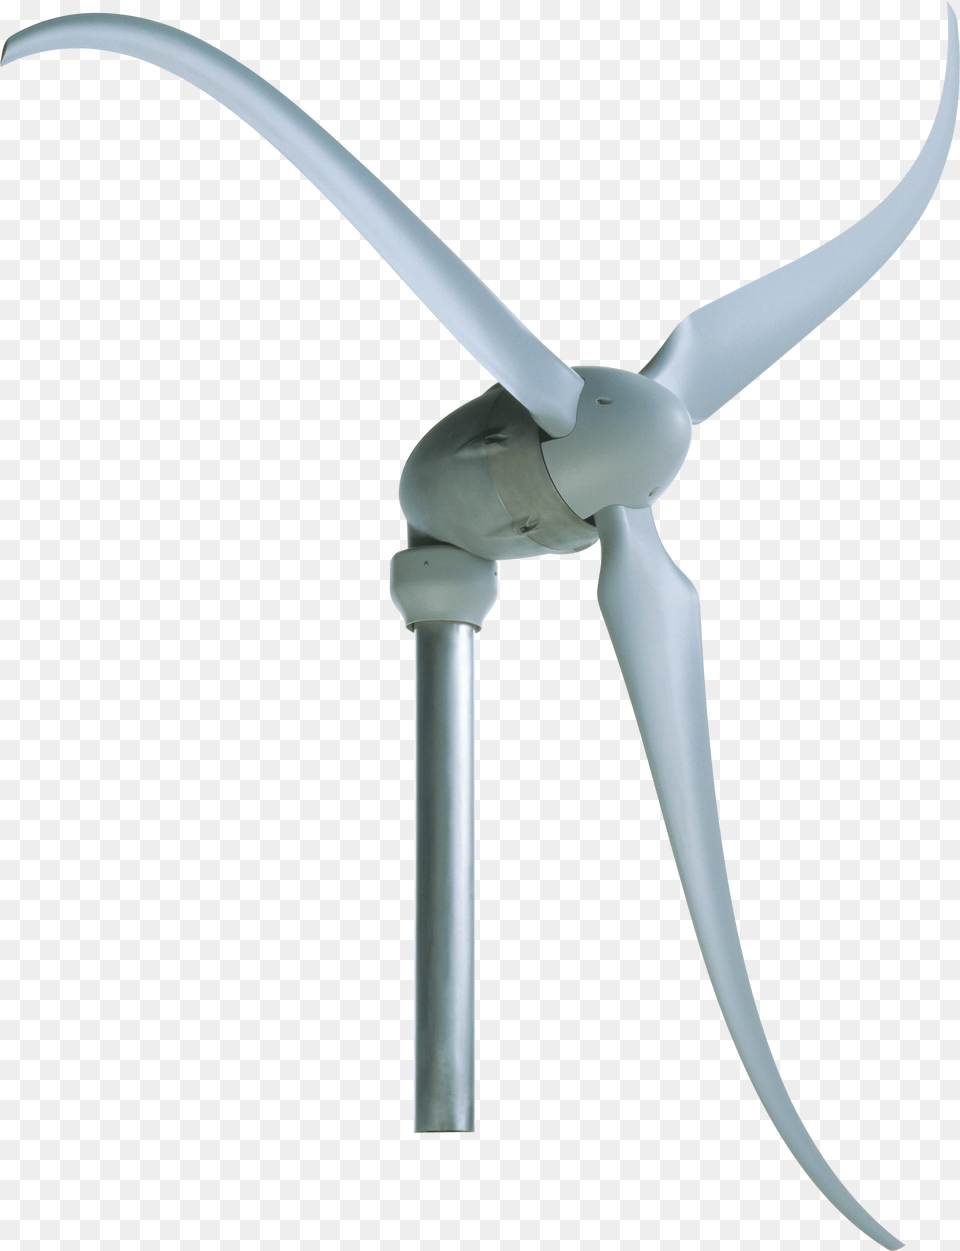 Wind Turbine Skystream, Engine, Machine, Motor, Wind Turbine Png